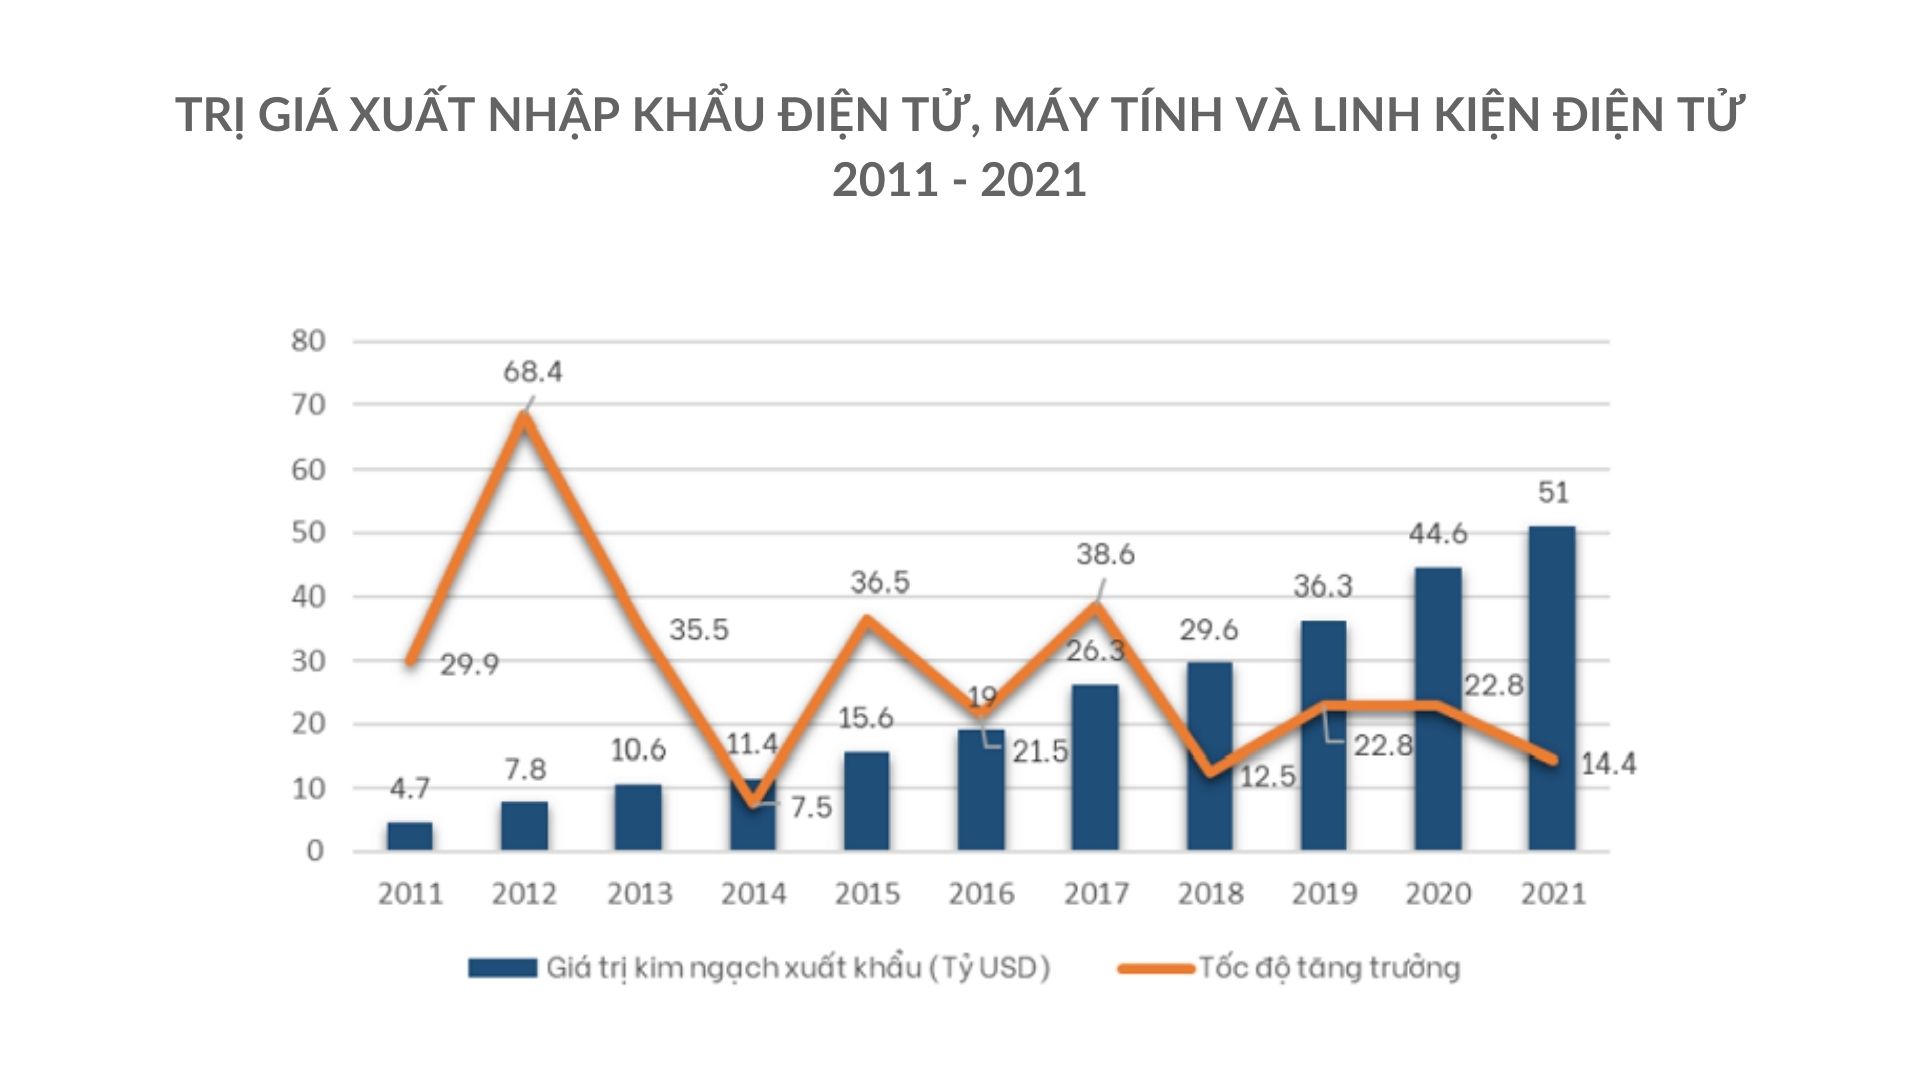 Giá trị kim ngạch xuất khẩu của Việt Nam từ năm 2011 - 2021 có sự tăng trưởng mạnh